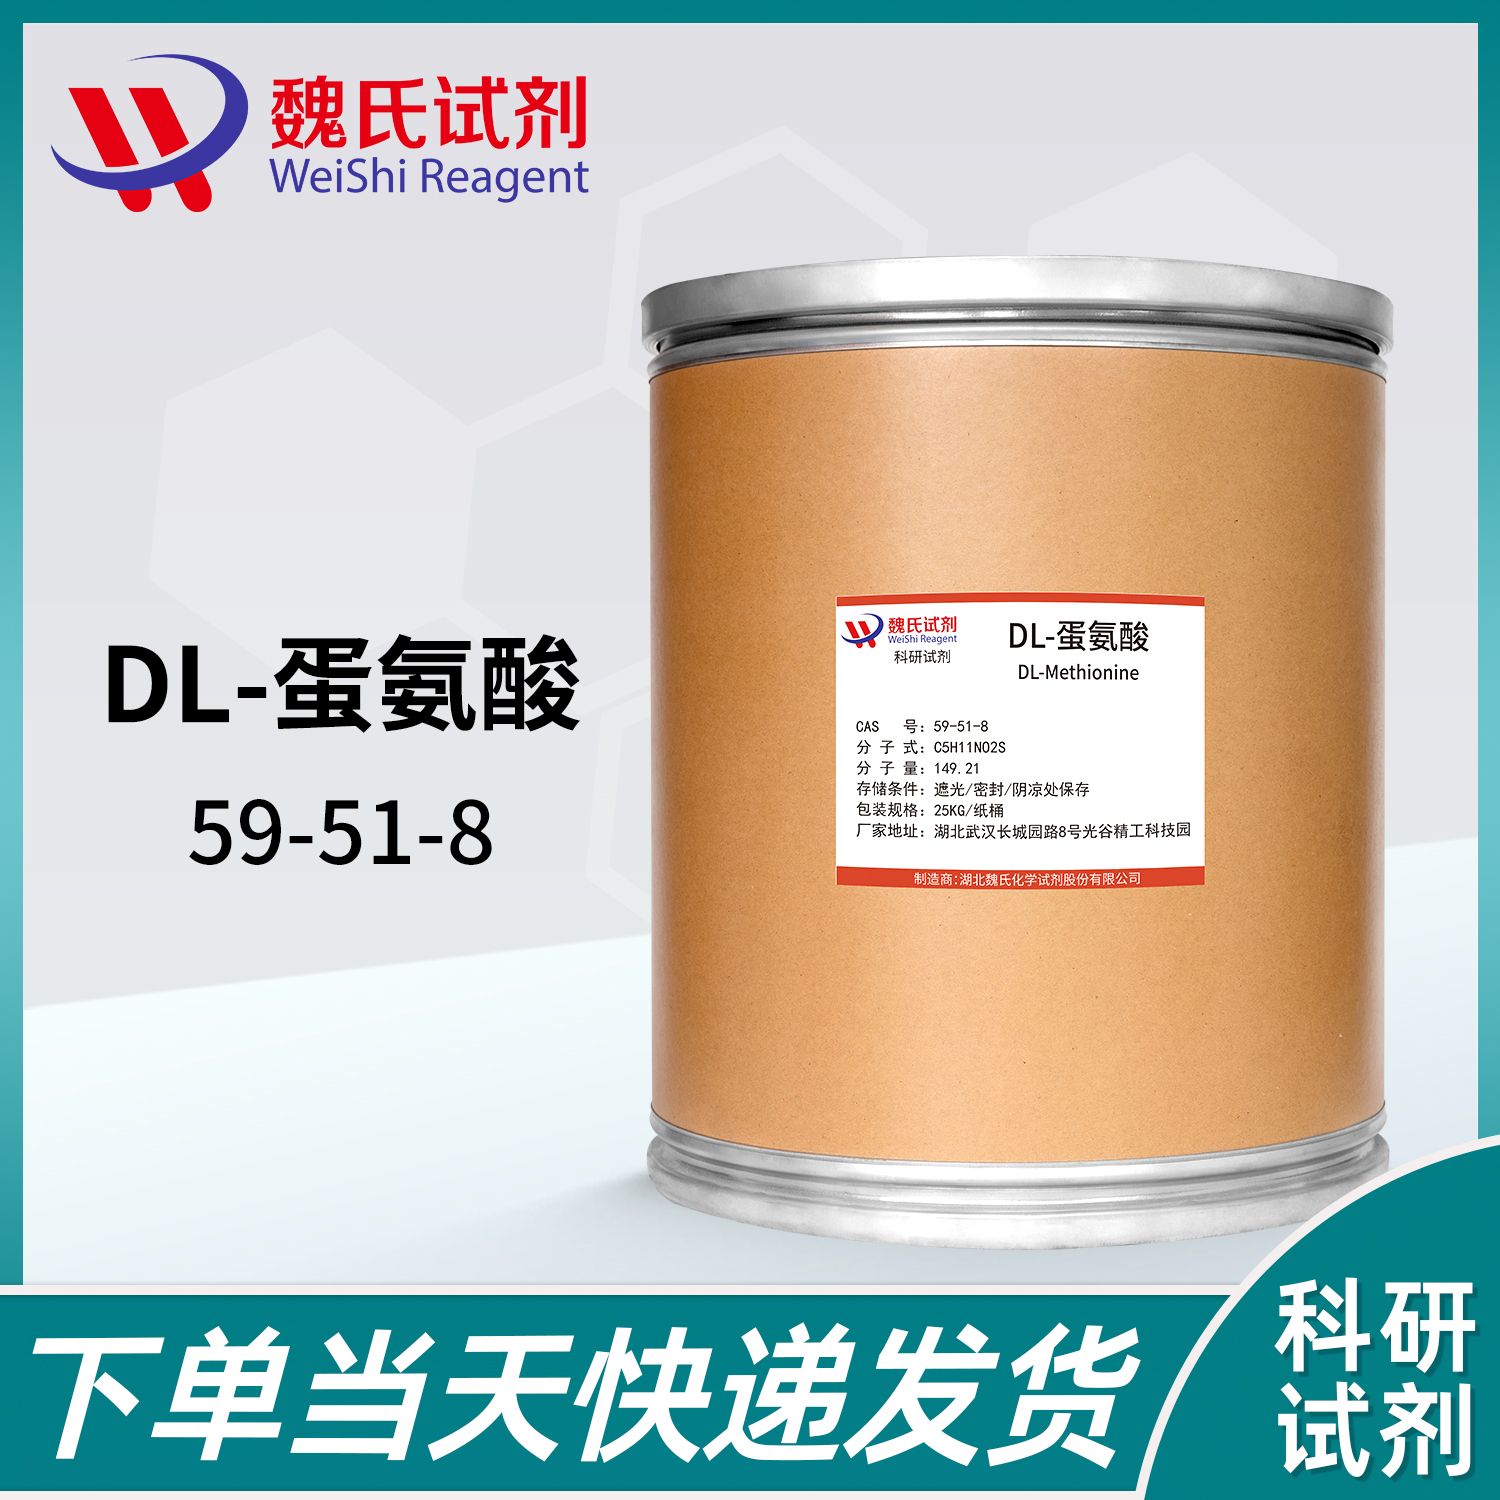 D19-DL-蛋氨酸-59-51-8